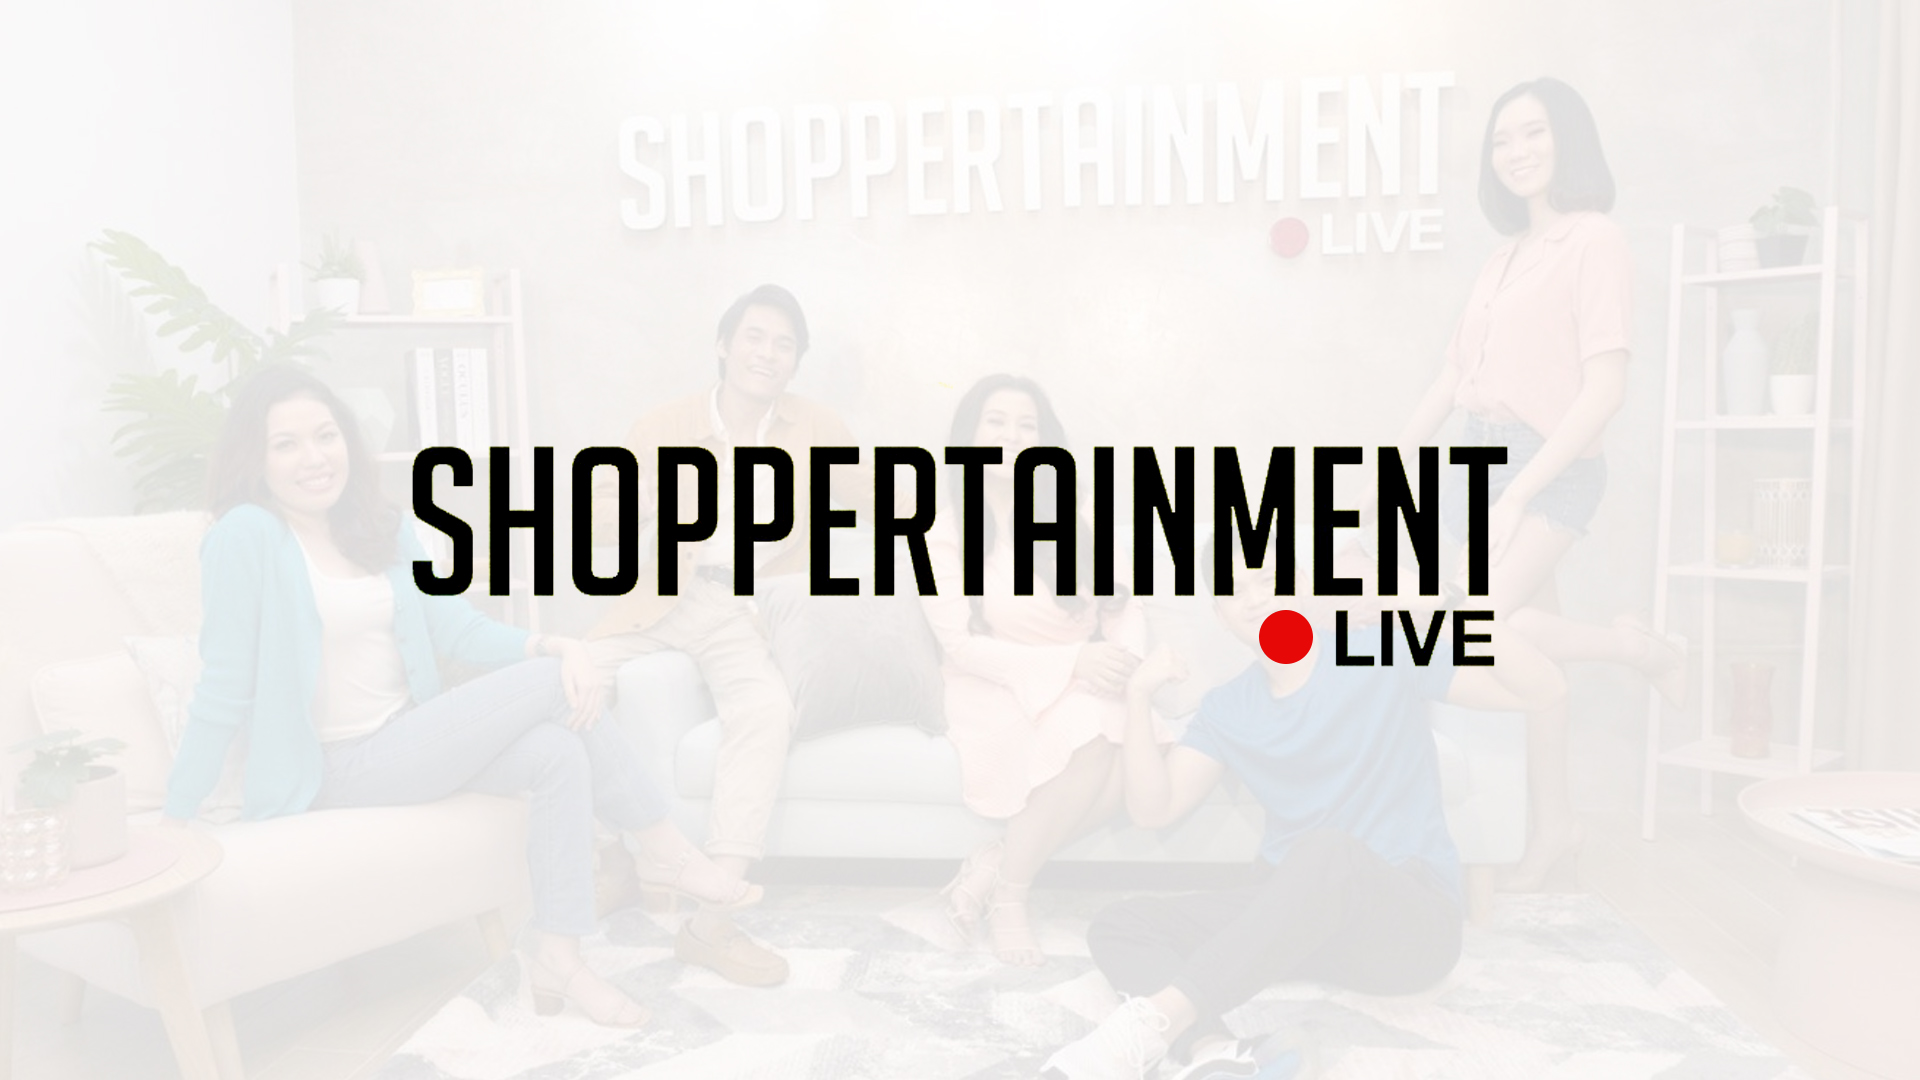 Shoppertainment Live opens seven ‘Livestyle’ Studios